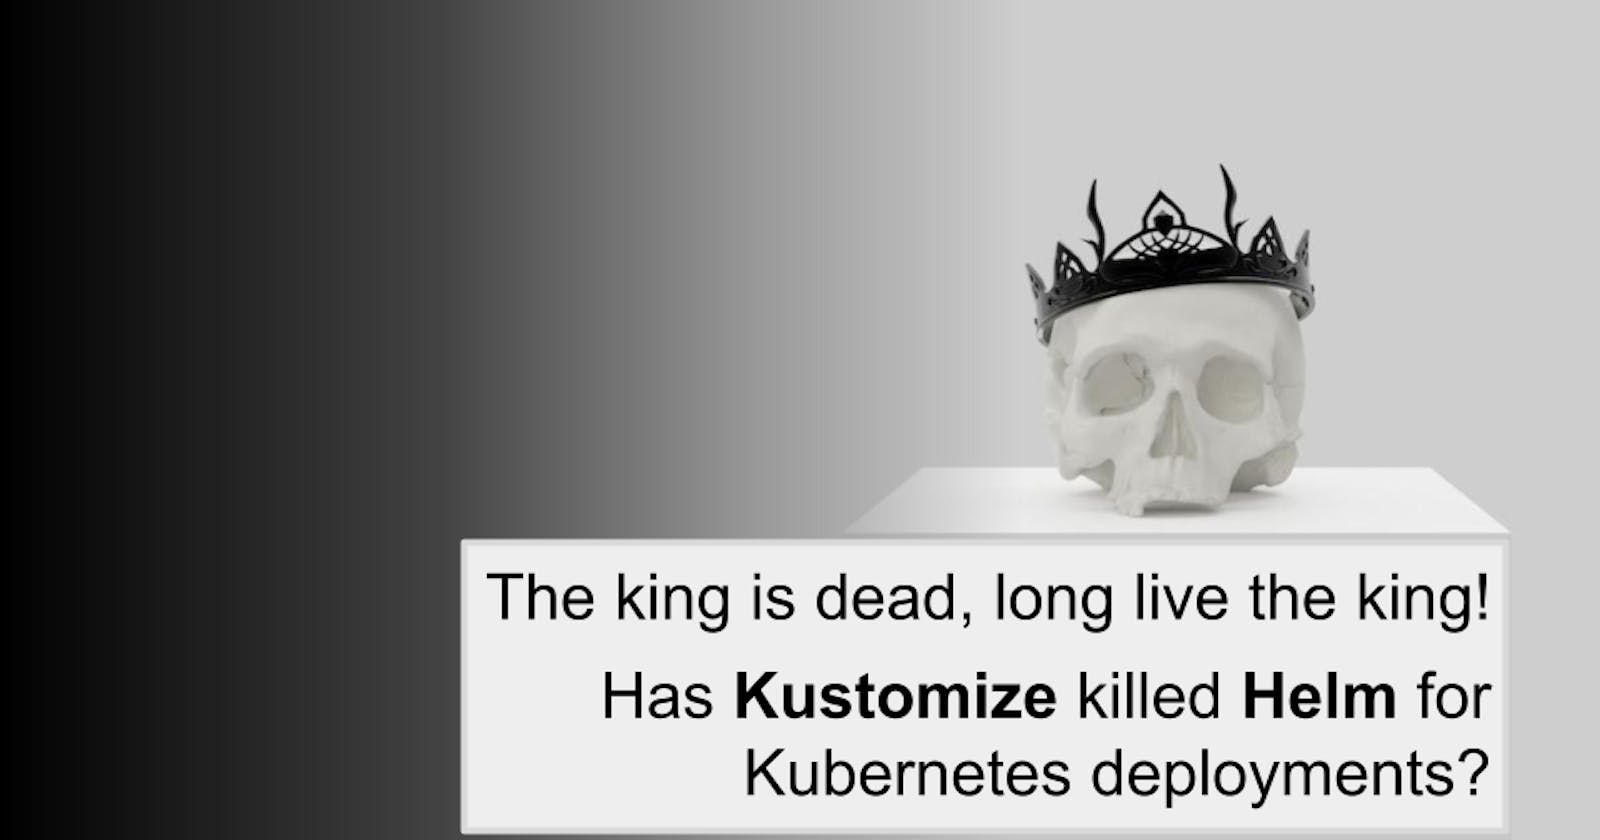 Has Kustomize killed Helm for Kubernetes deployments?